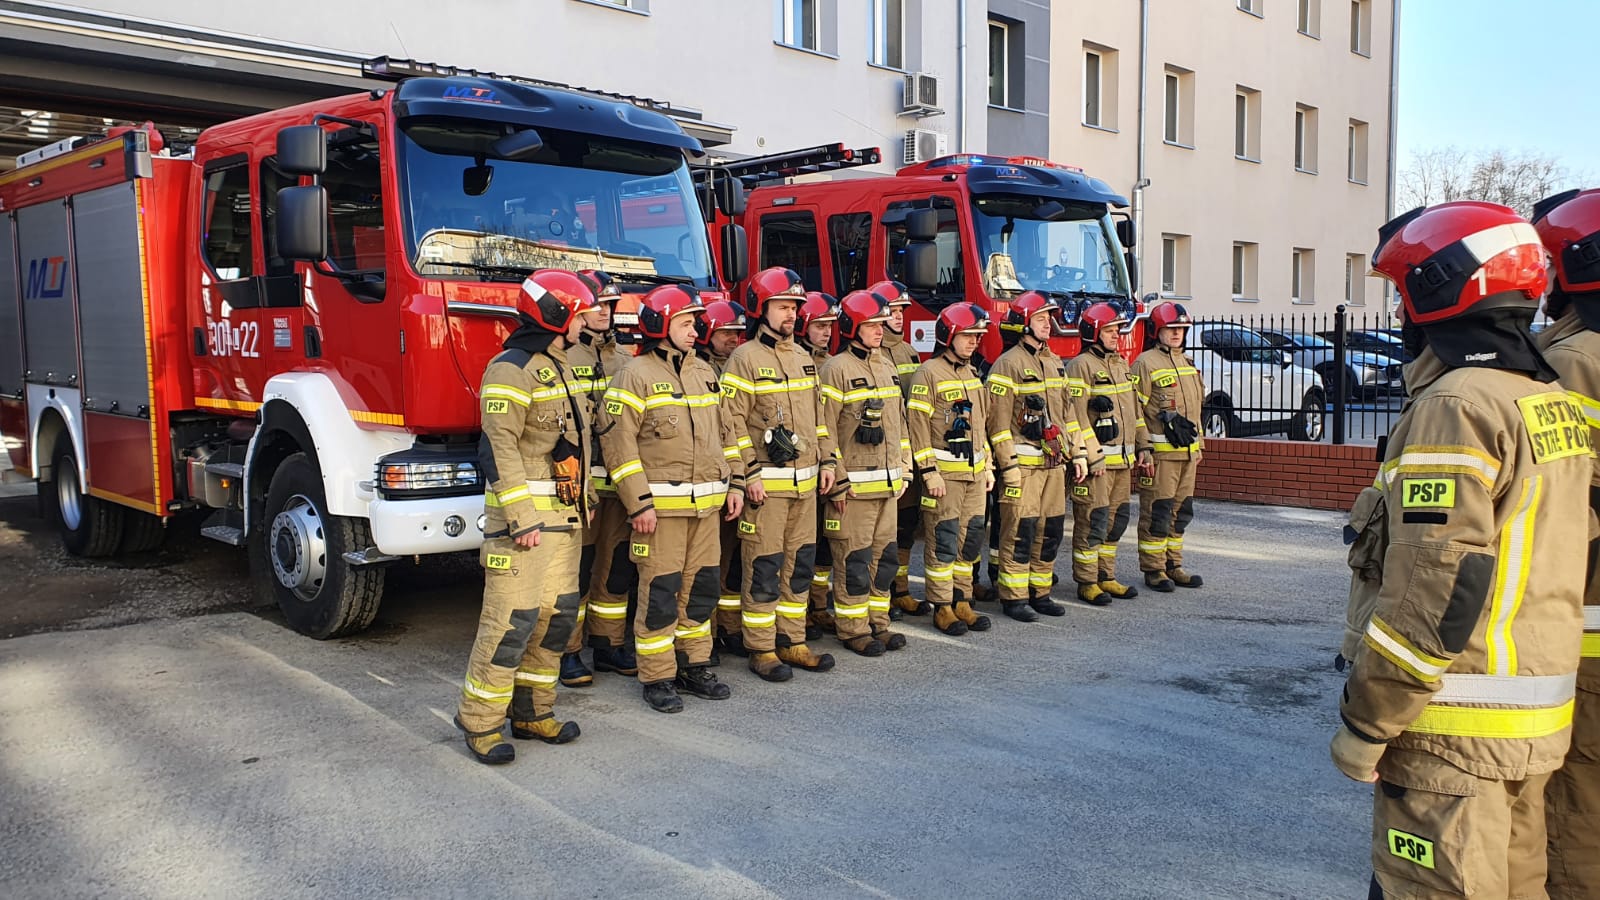 Minuta ciszy dla poległych strażaków z Ukrainy (zdjęcia)